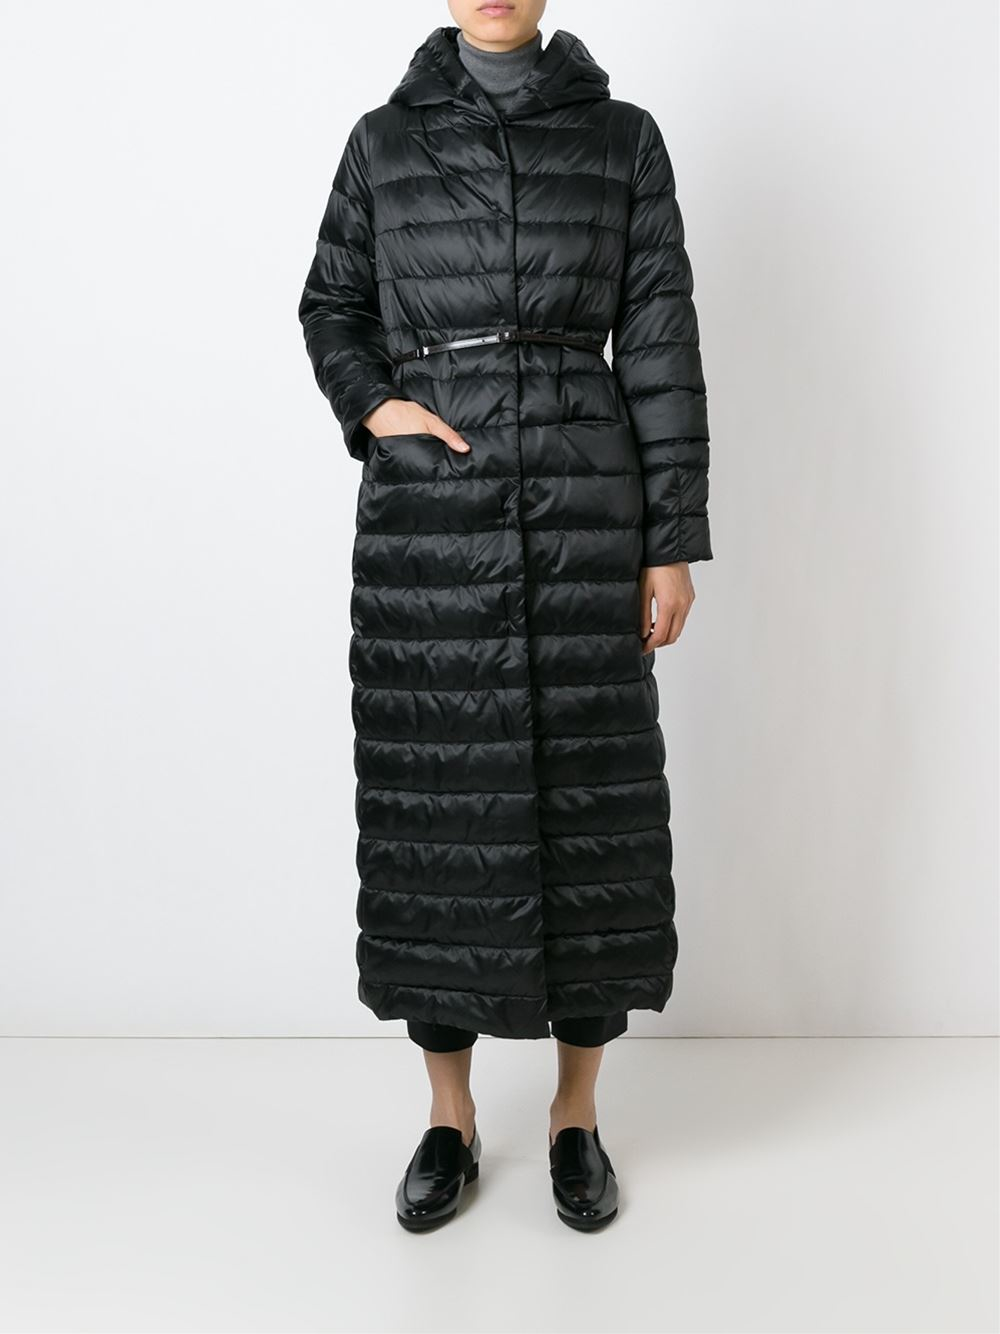 Long black padded coat